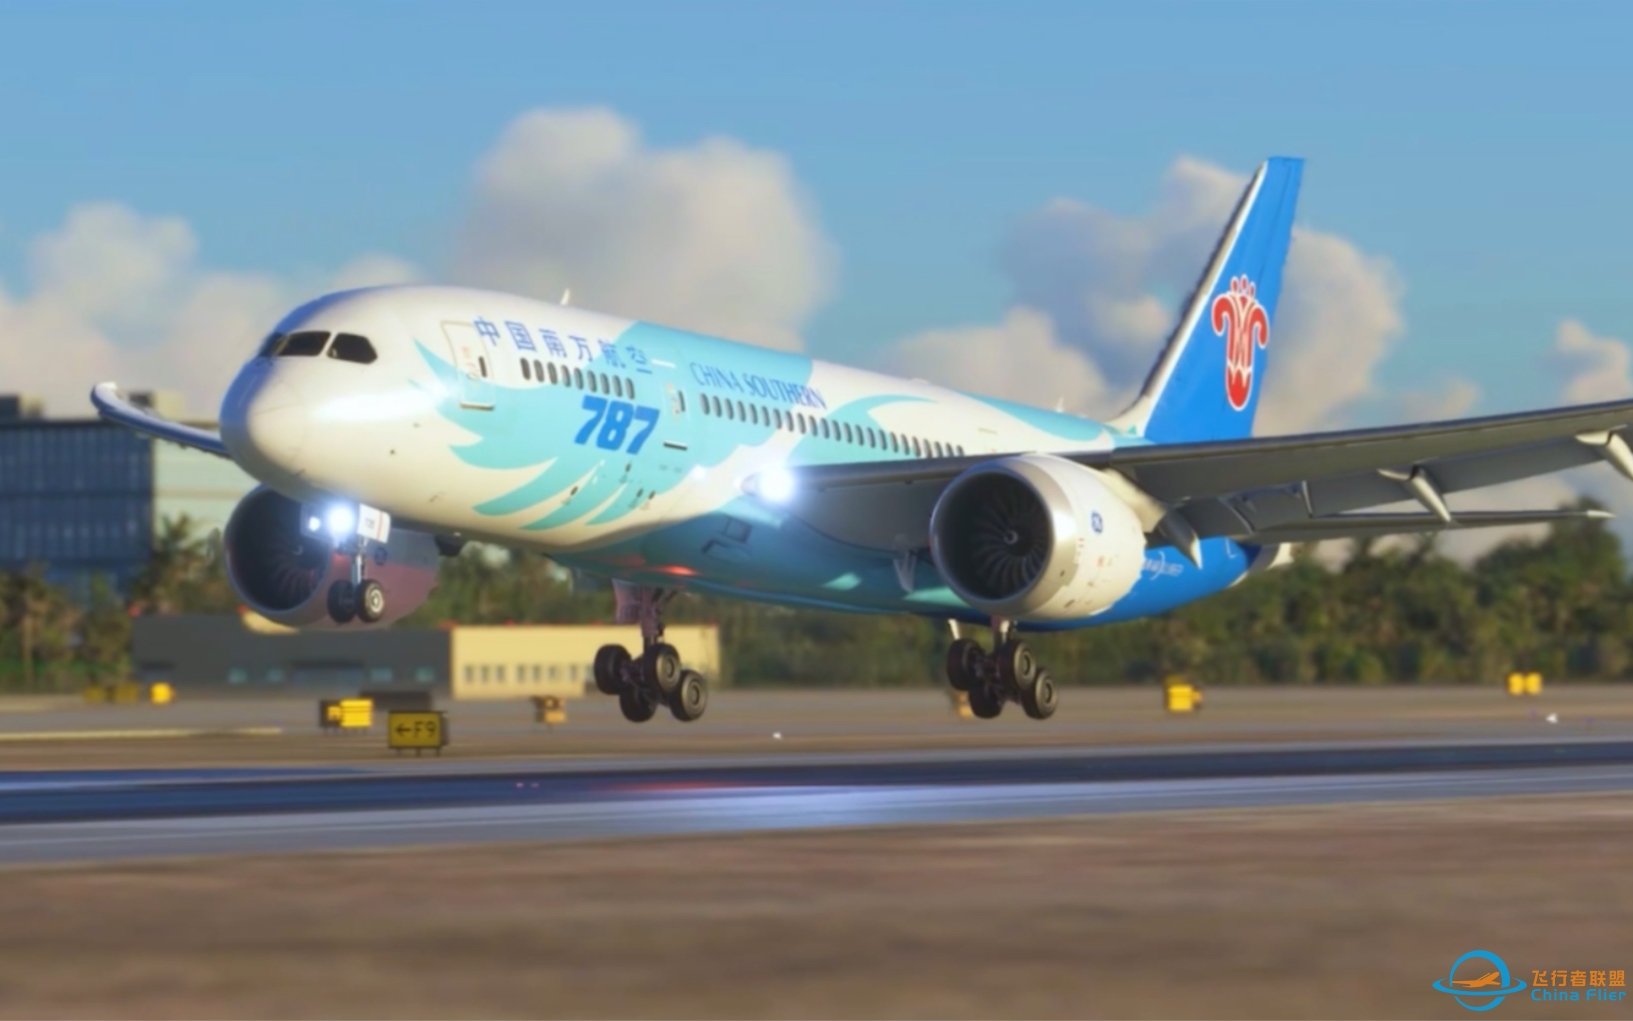 这是软着陆吗？中国南方航空787-8抵达广州白云机场(模拟飞行2020)-2518 